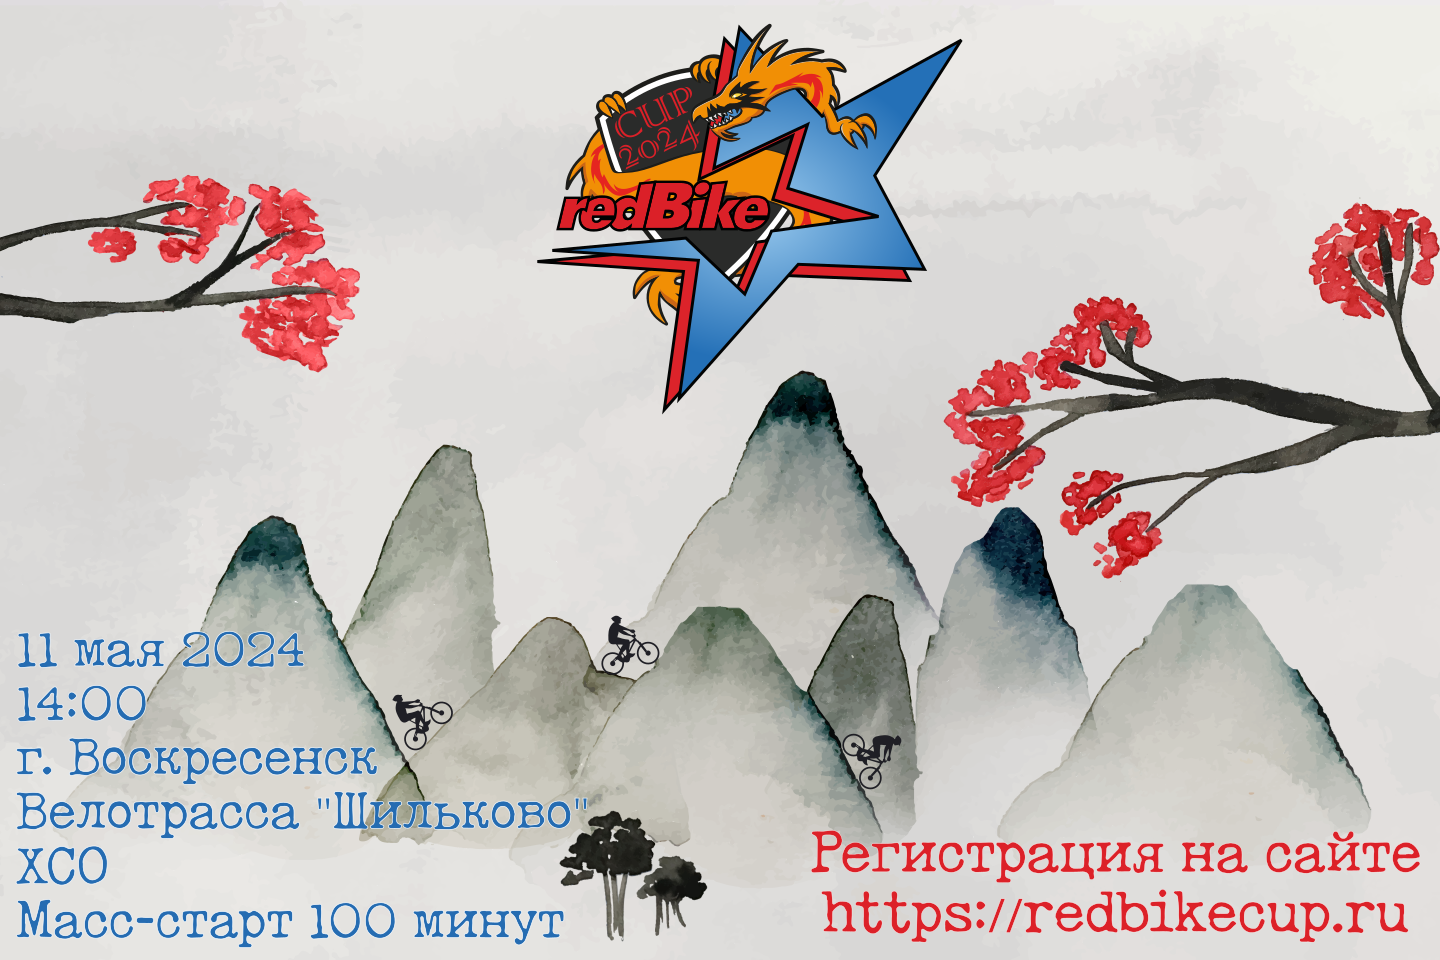 redBike cup #1 2024: 11 мая, г.Воскресенск, трасса Шильково, 100 минут. Старт в 14:00